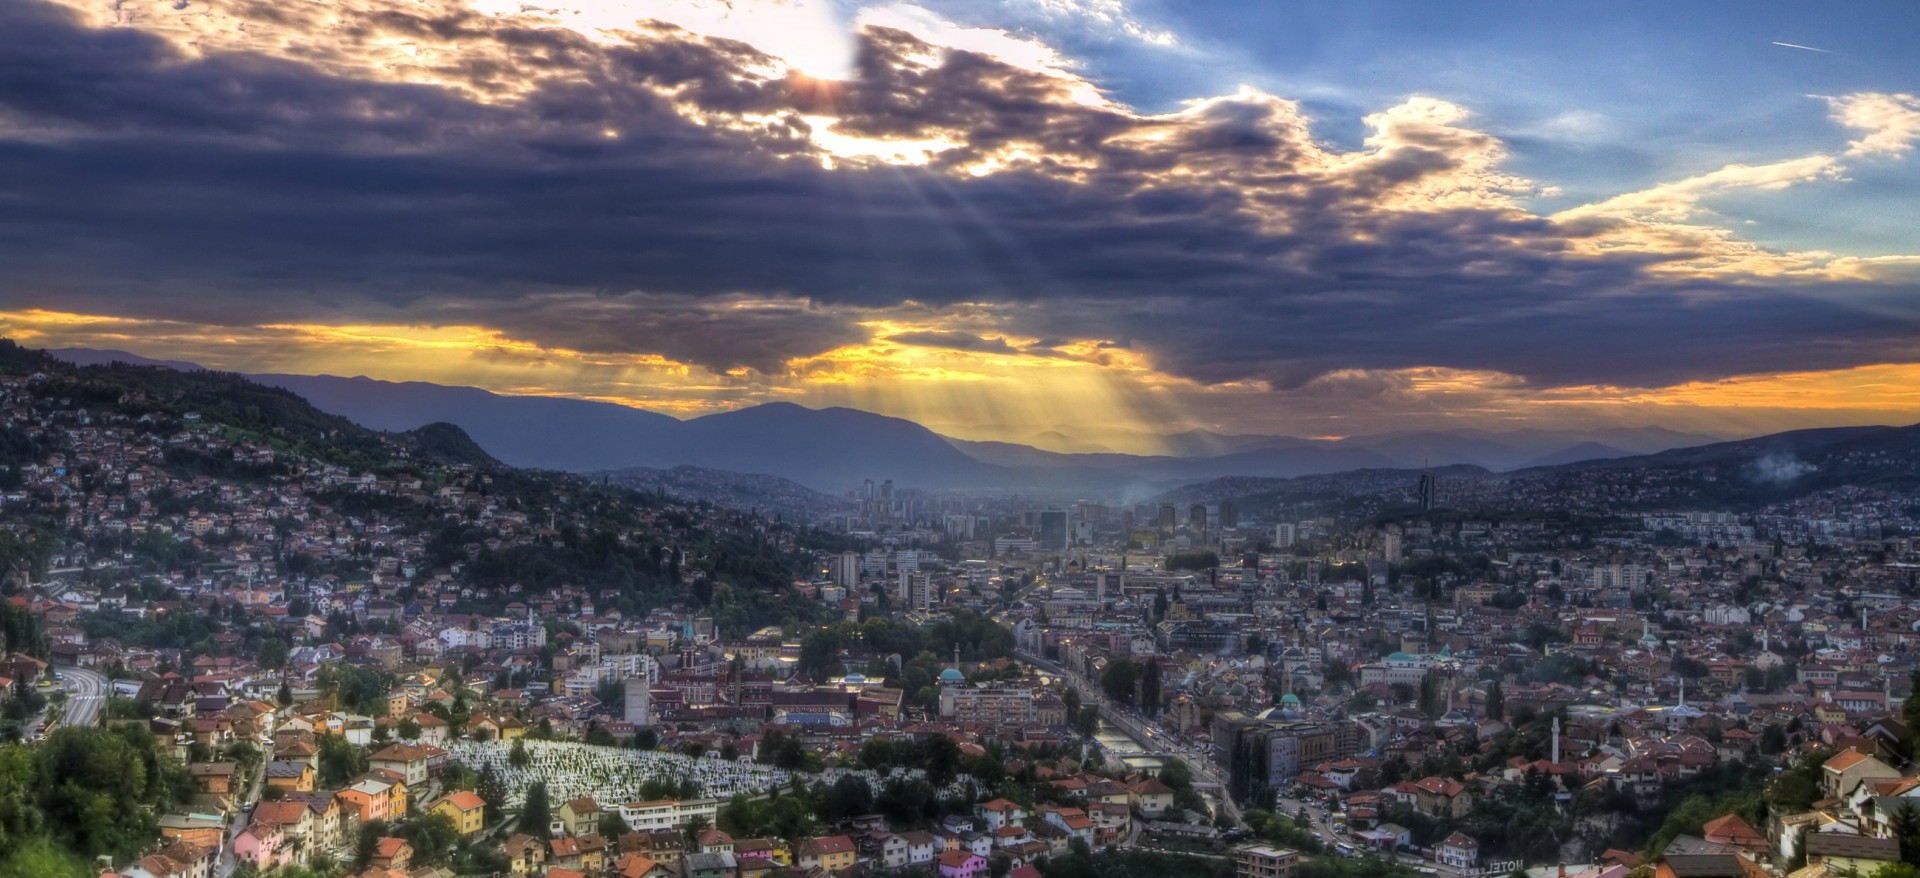 A Sarajevo, le pape François prêchera la réconciliation (Photo:Clark & Kim Kays/Flickr/CC BY-NC-ND 2.0)